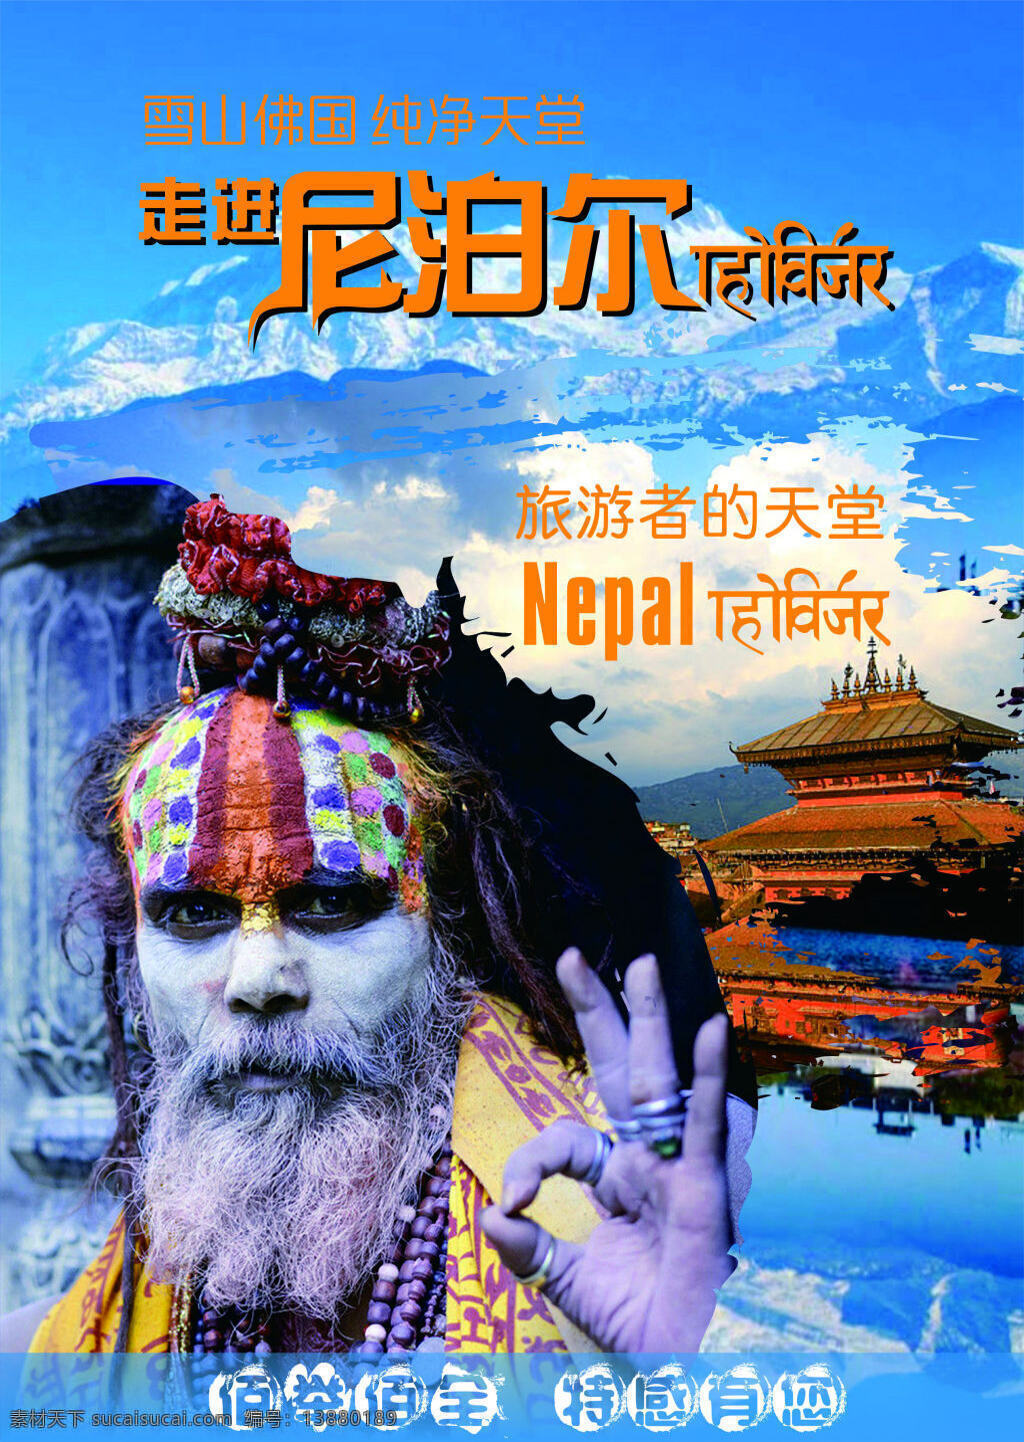 尼泊尔定 尼泊尔 旅游 雪山 美景 海报 蓝色